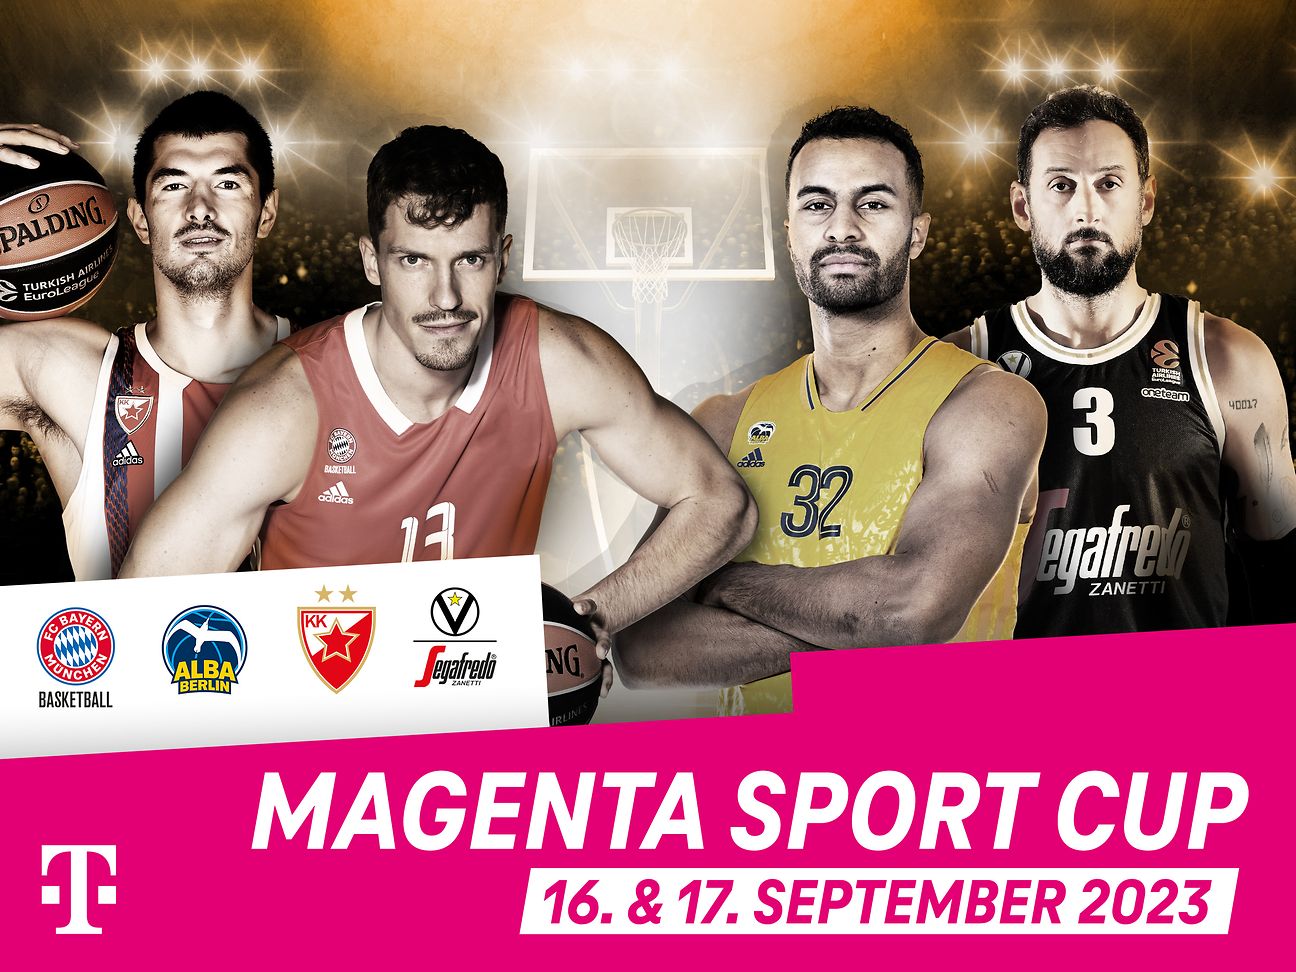 MagentaSport Cup 2023 mit Top EuroLeague Klubs Deutsche Telekom